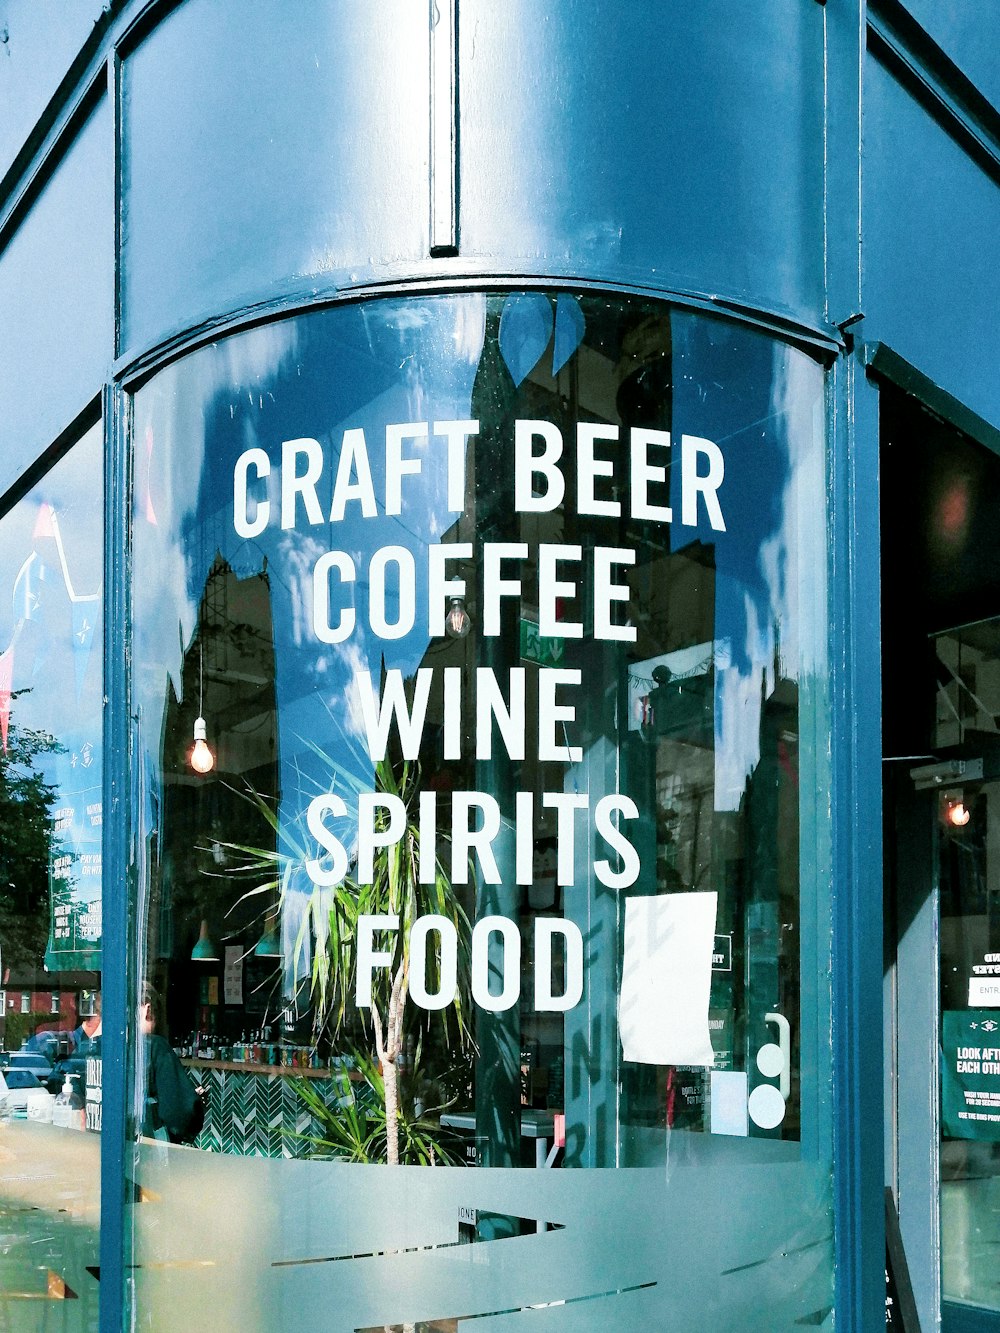 クラフトビールコーヒーワインスピリッツフードと書かれた看板のある青い建物